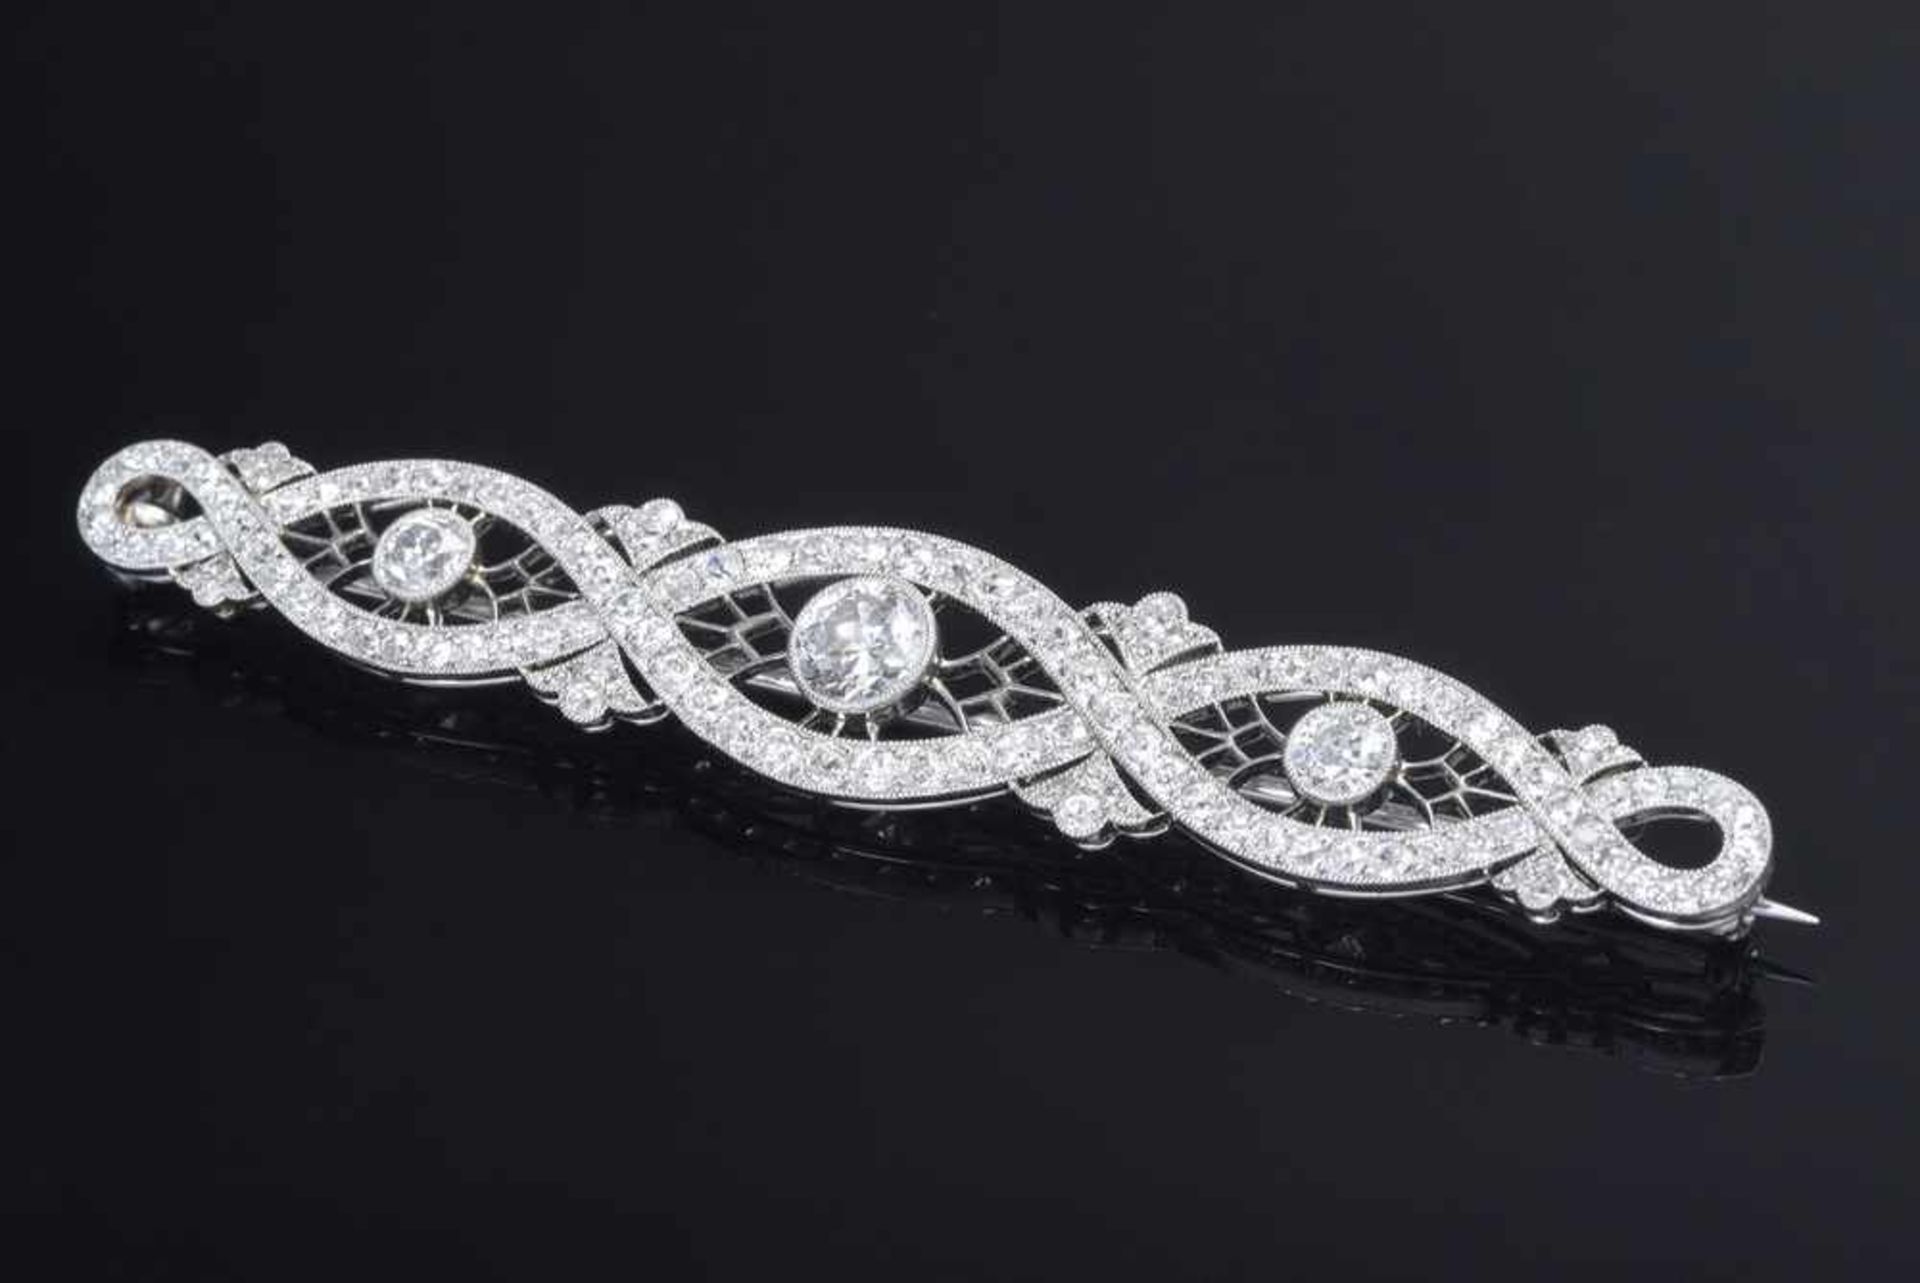 Art Deco Platin 950 Nadel mit Diamanten: 1 Brillant, 98 Altschliffdiamanten und 28 Diamantrosen (